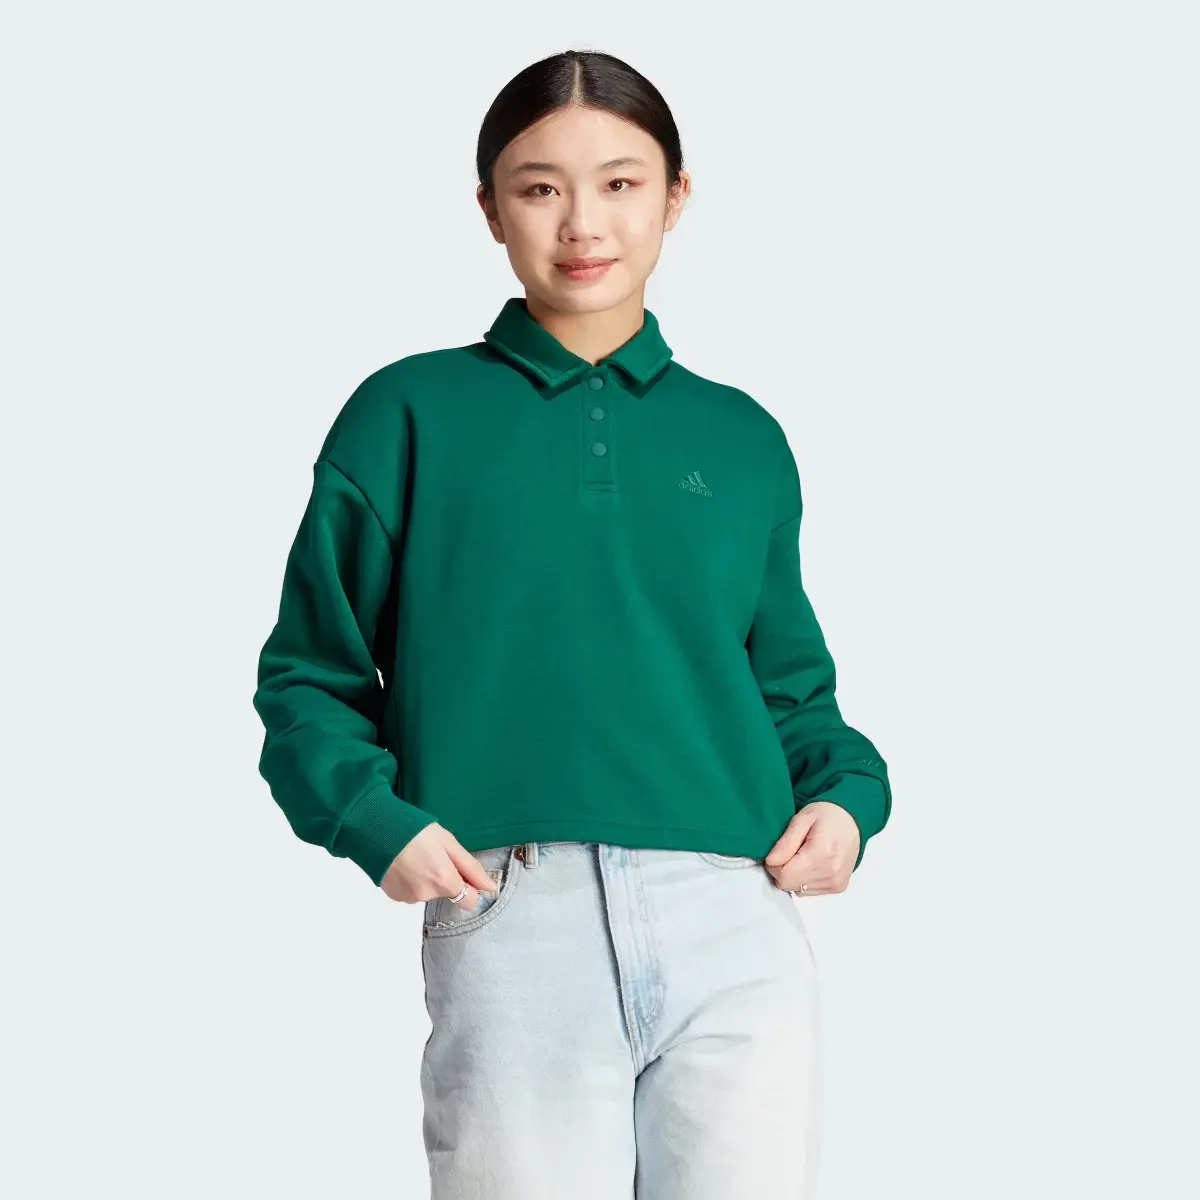 Adidas All SZN Fleece Graphic Polo Sweatshirt. 2